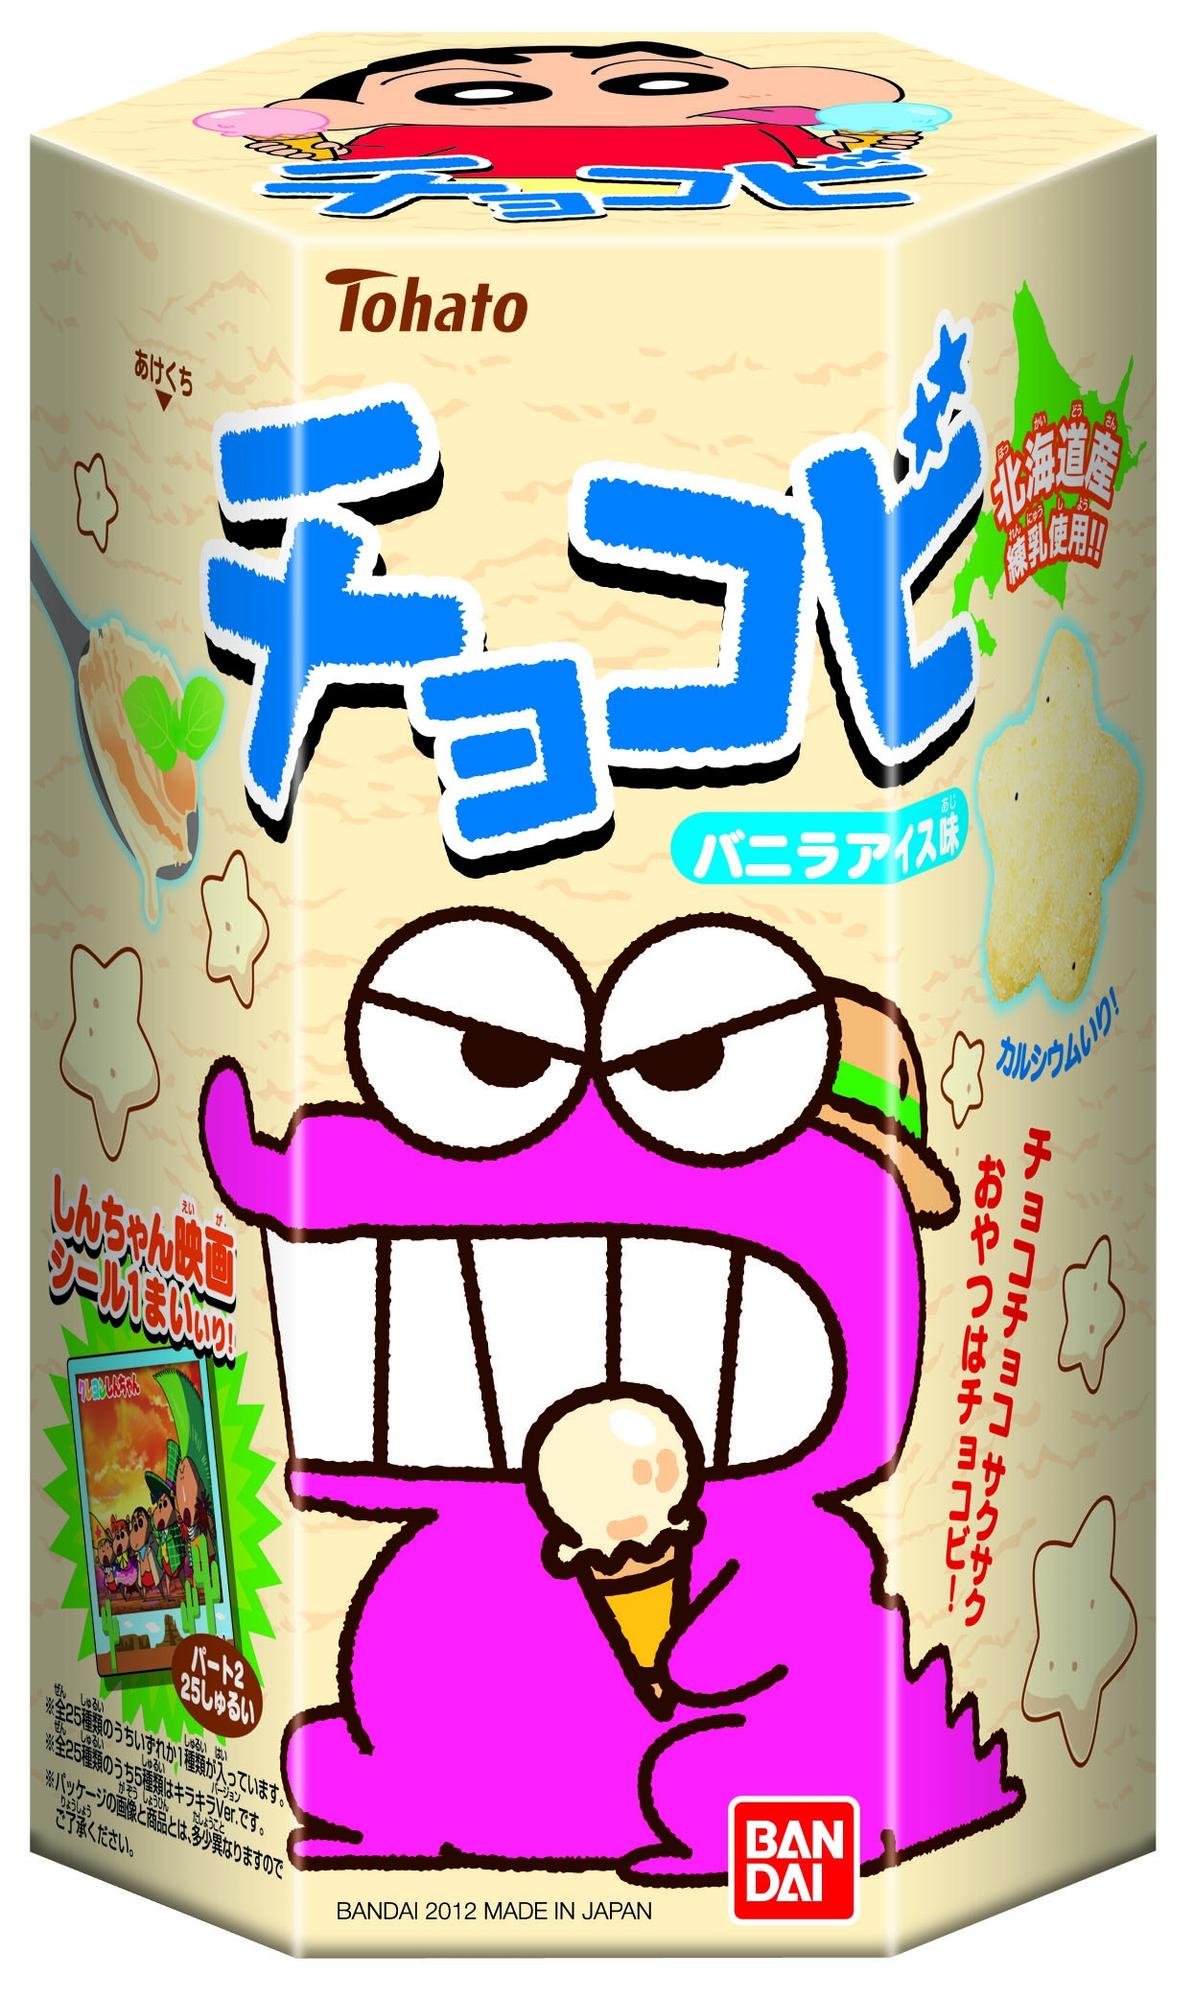 チョコビ バニラアイス味 発売日 2012年7月 バンダイ キャンディ公式サイト